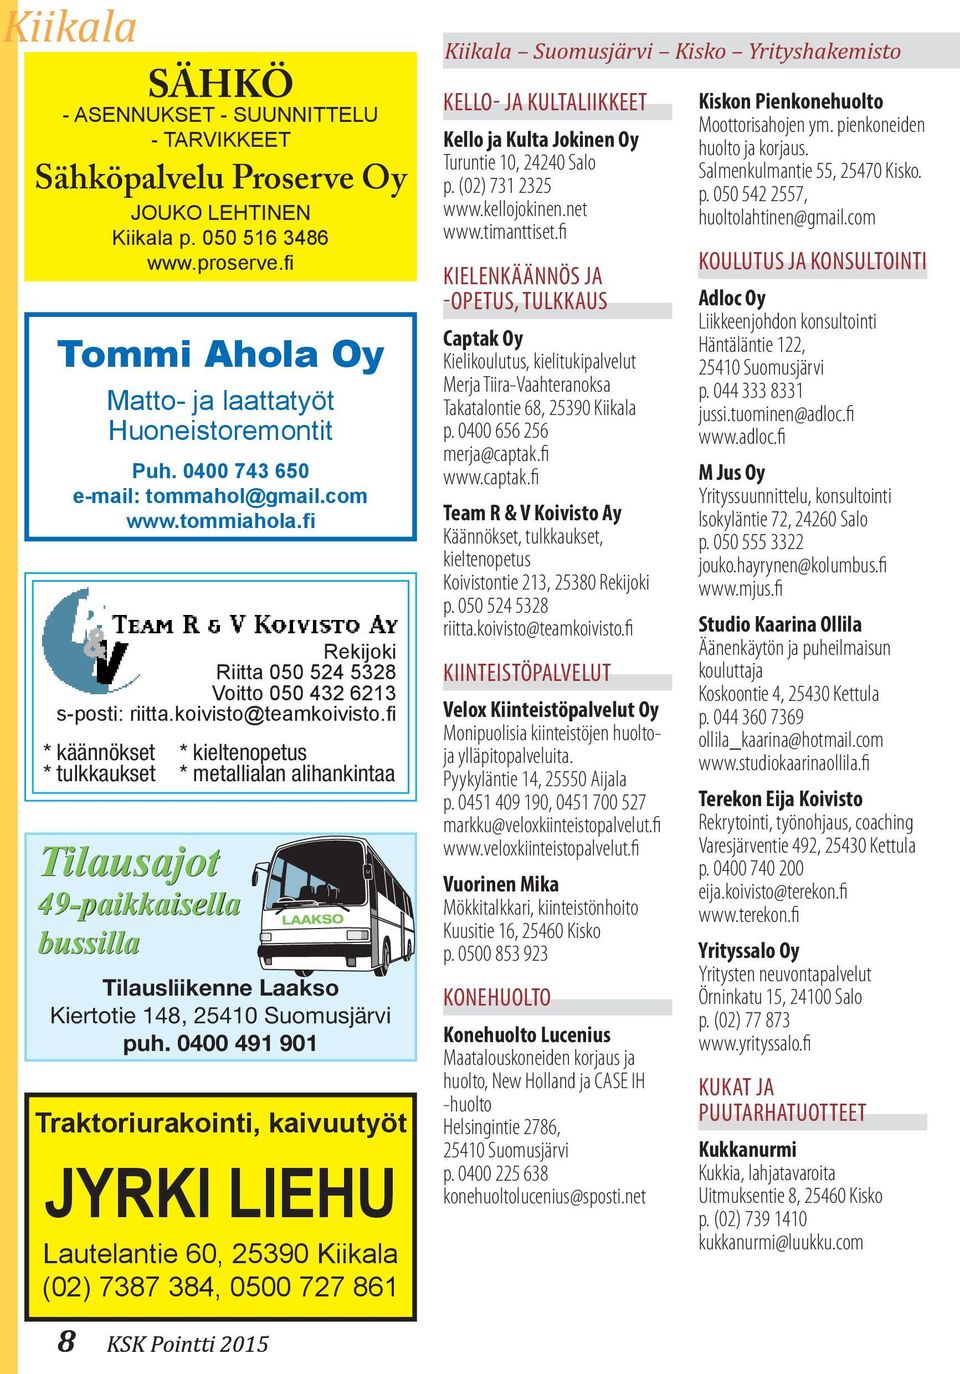 0400 743 650 e-mail: tommahol@gmail.com www.tommiahola.fi Tilausajot 49-paikkaisella bussilla * kieltenopetus * metallialan alihankintaa Tilausliikenne Laakso Kiertotie 148, 25410 Suomusjärvi puh.